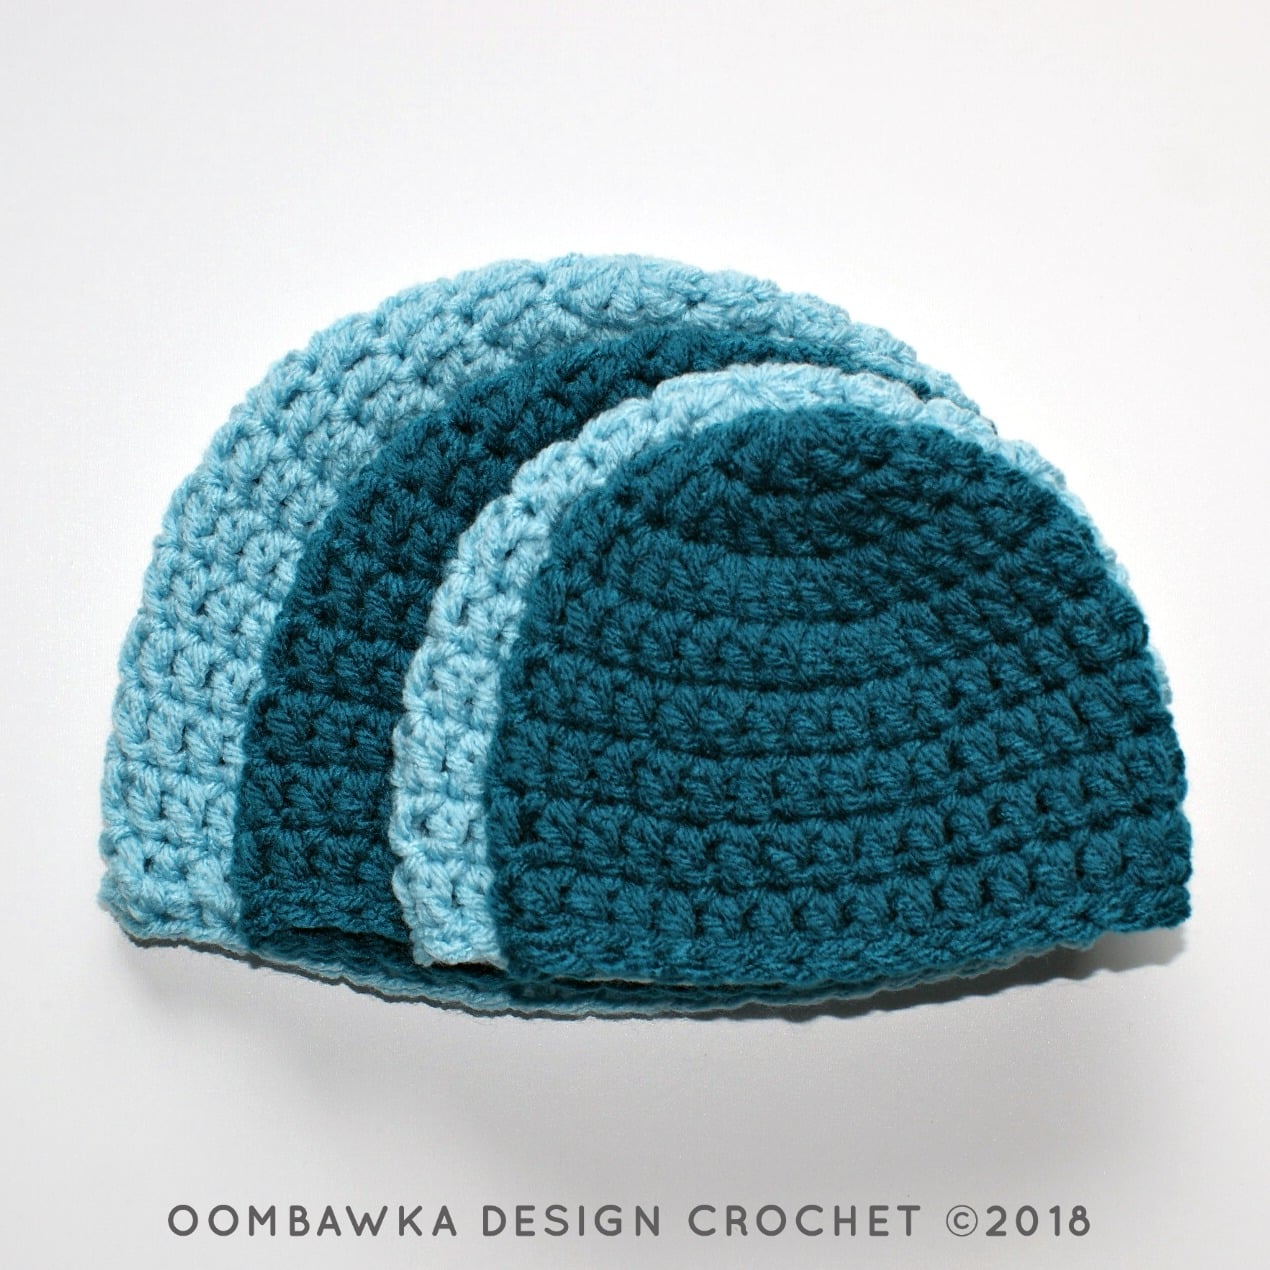 Preemie Crochet Hat Pattern Simple Double Crochet Hat Pattern Oombawka Design Crochet